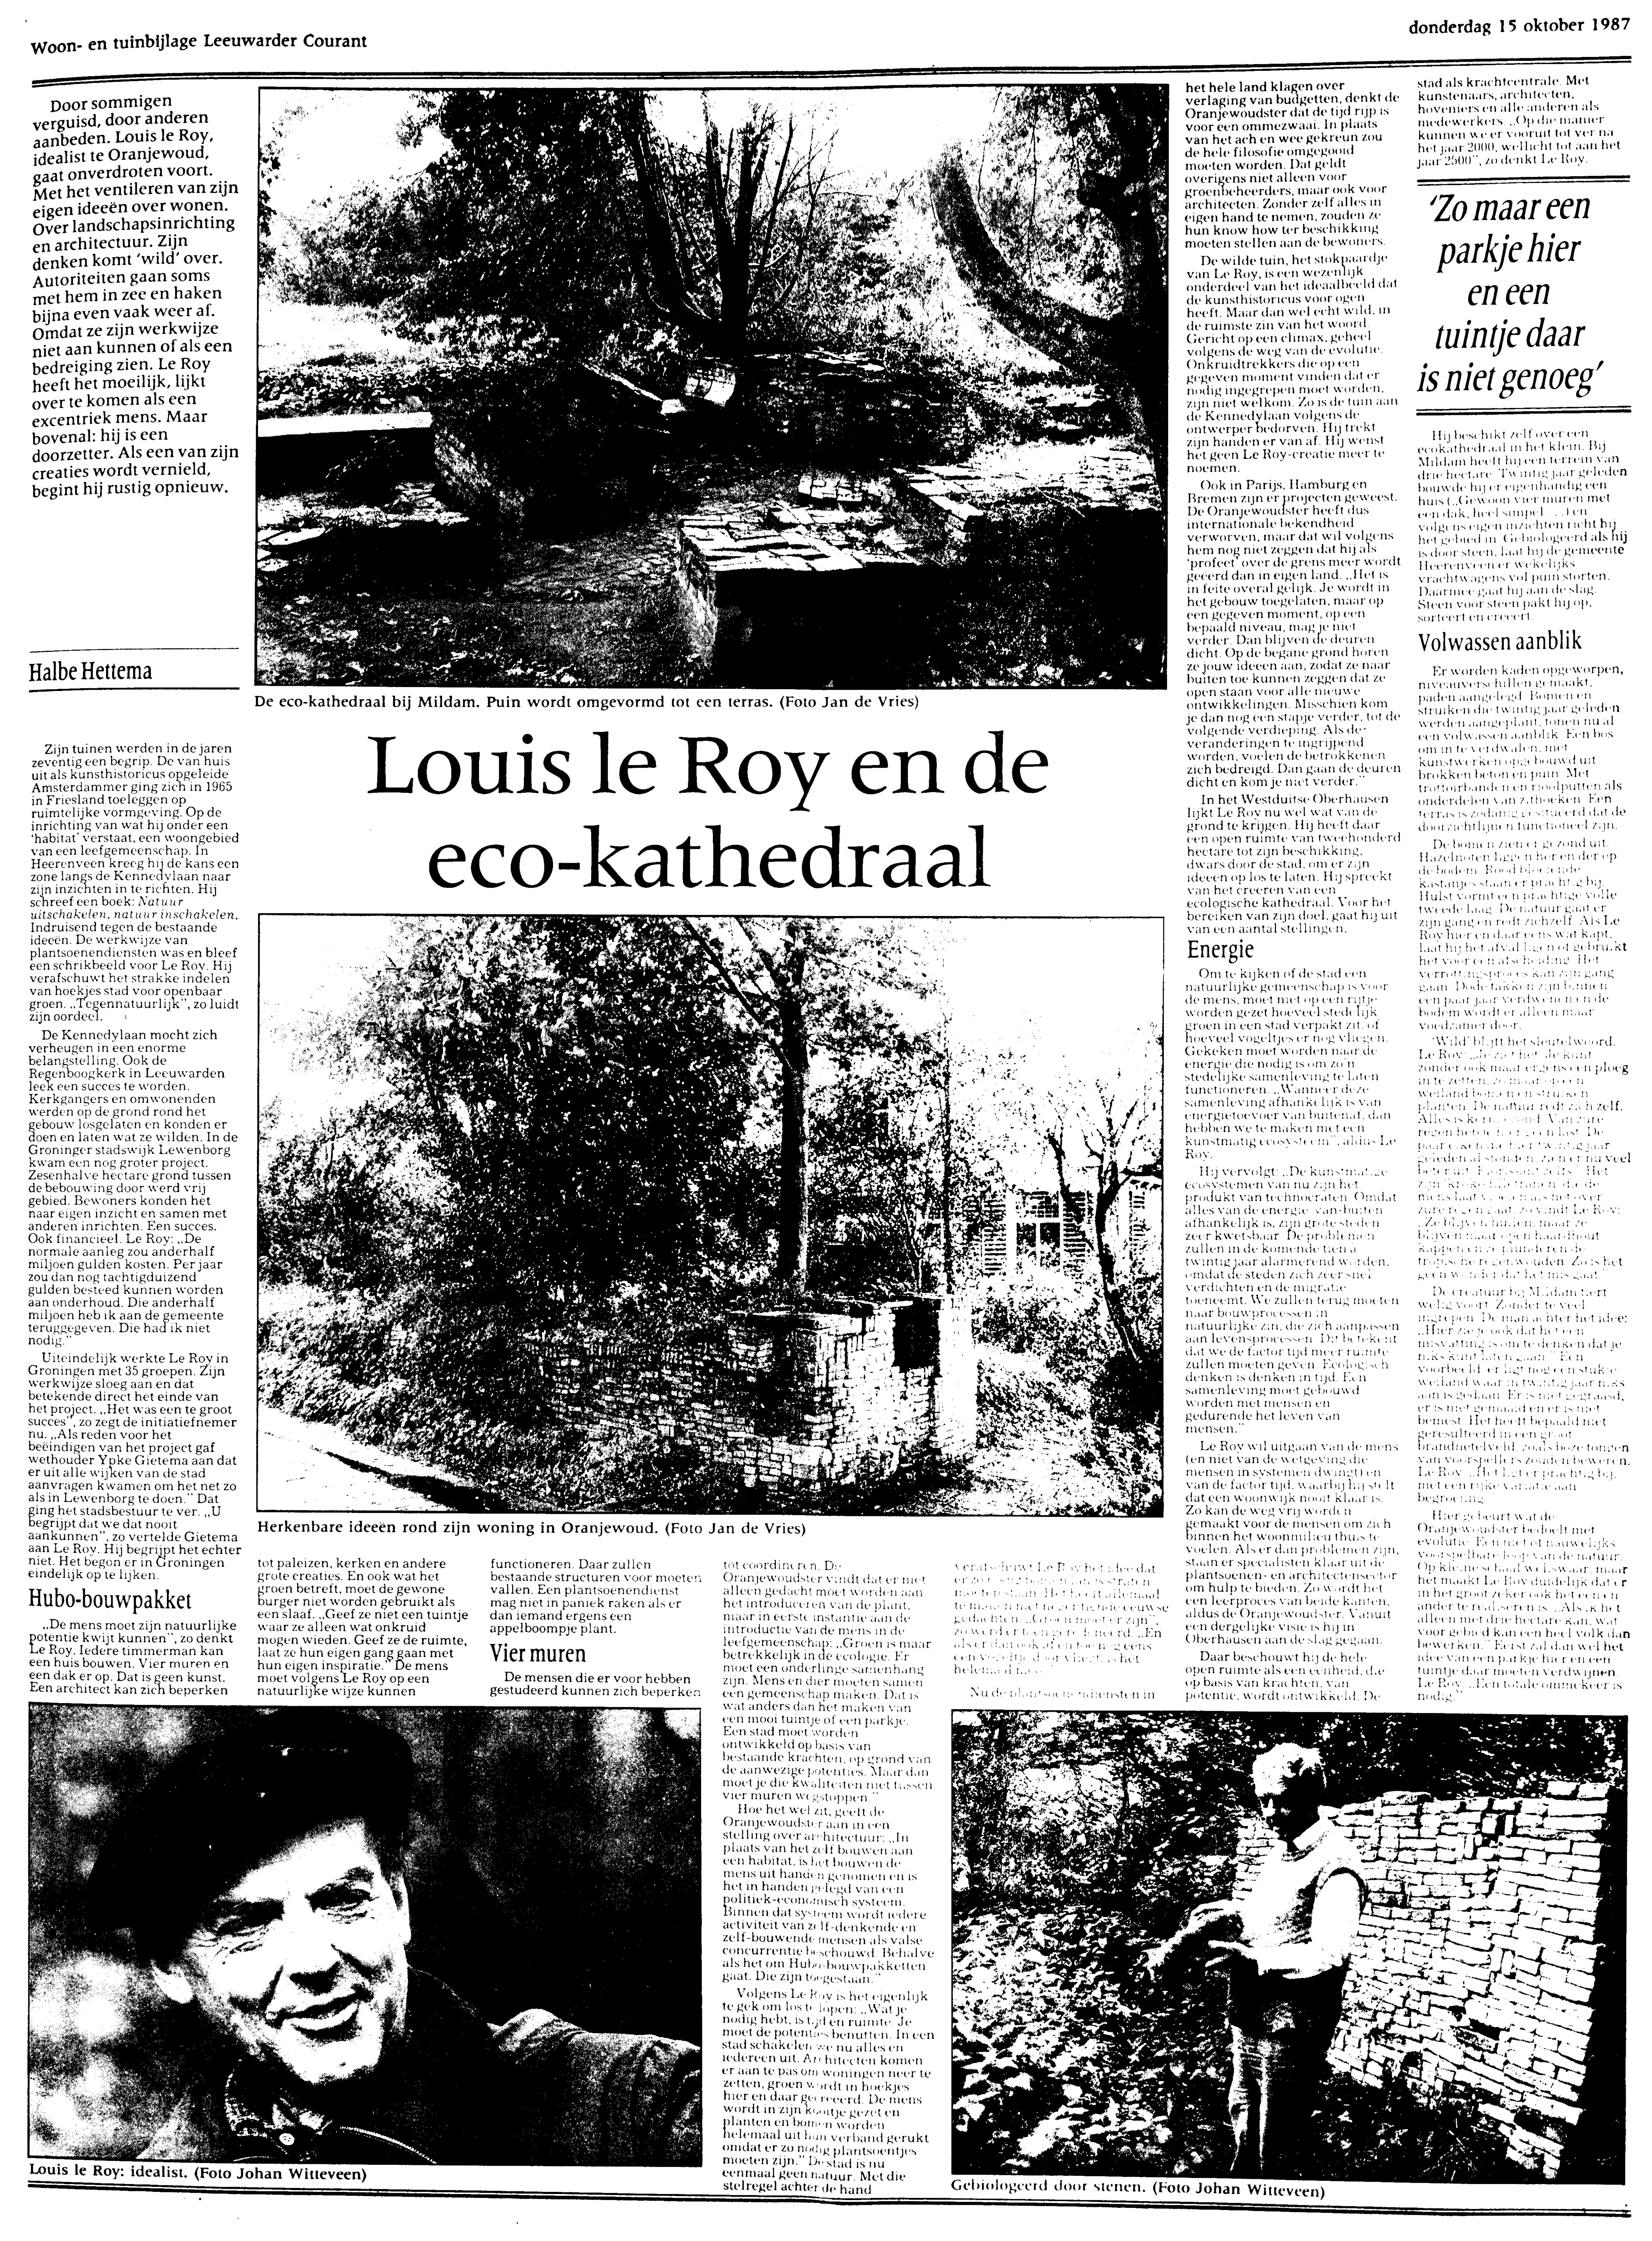 15-10-1987; ed. Dag bezitskenmerk KBDK